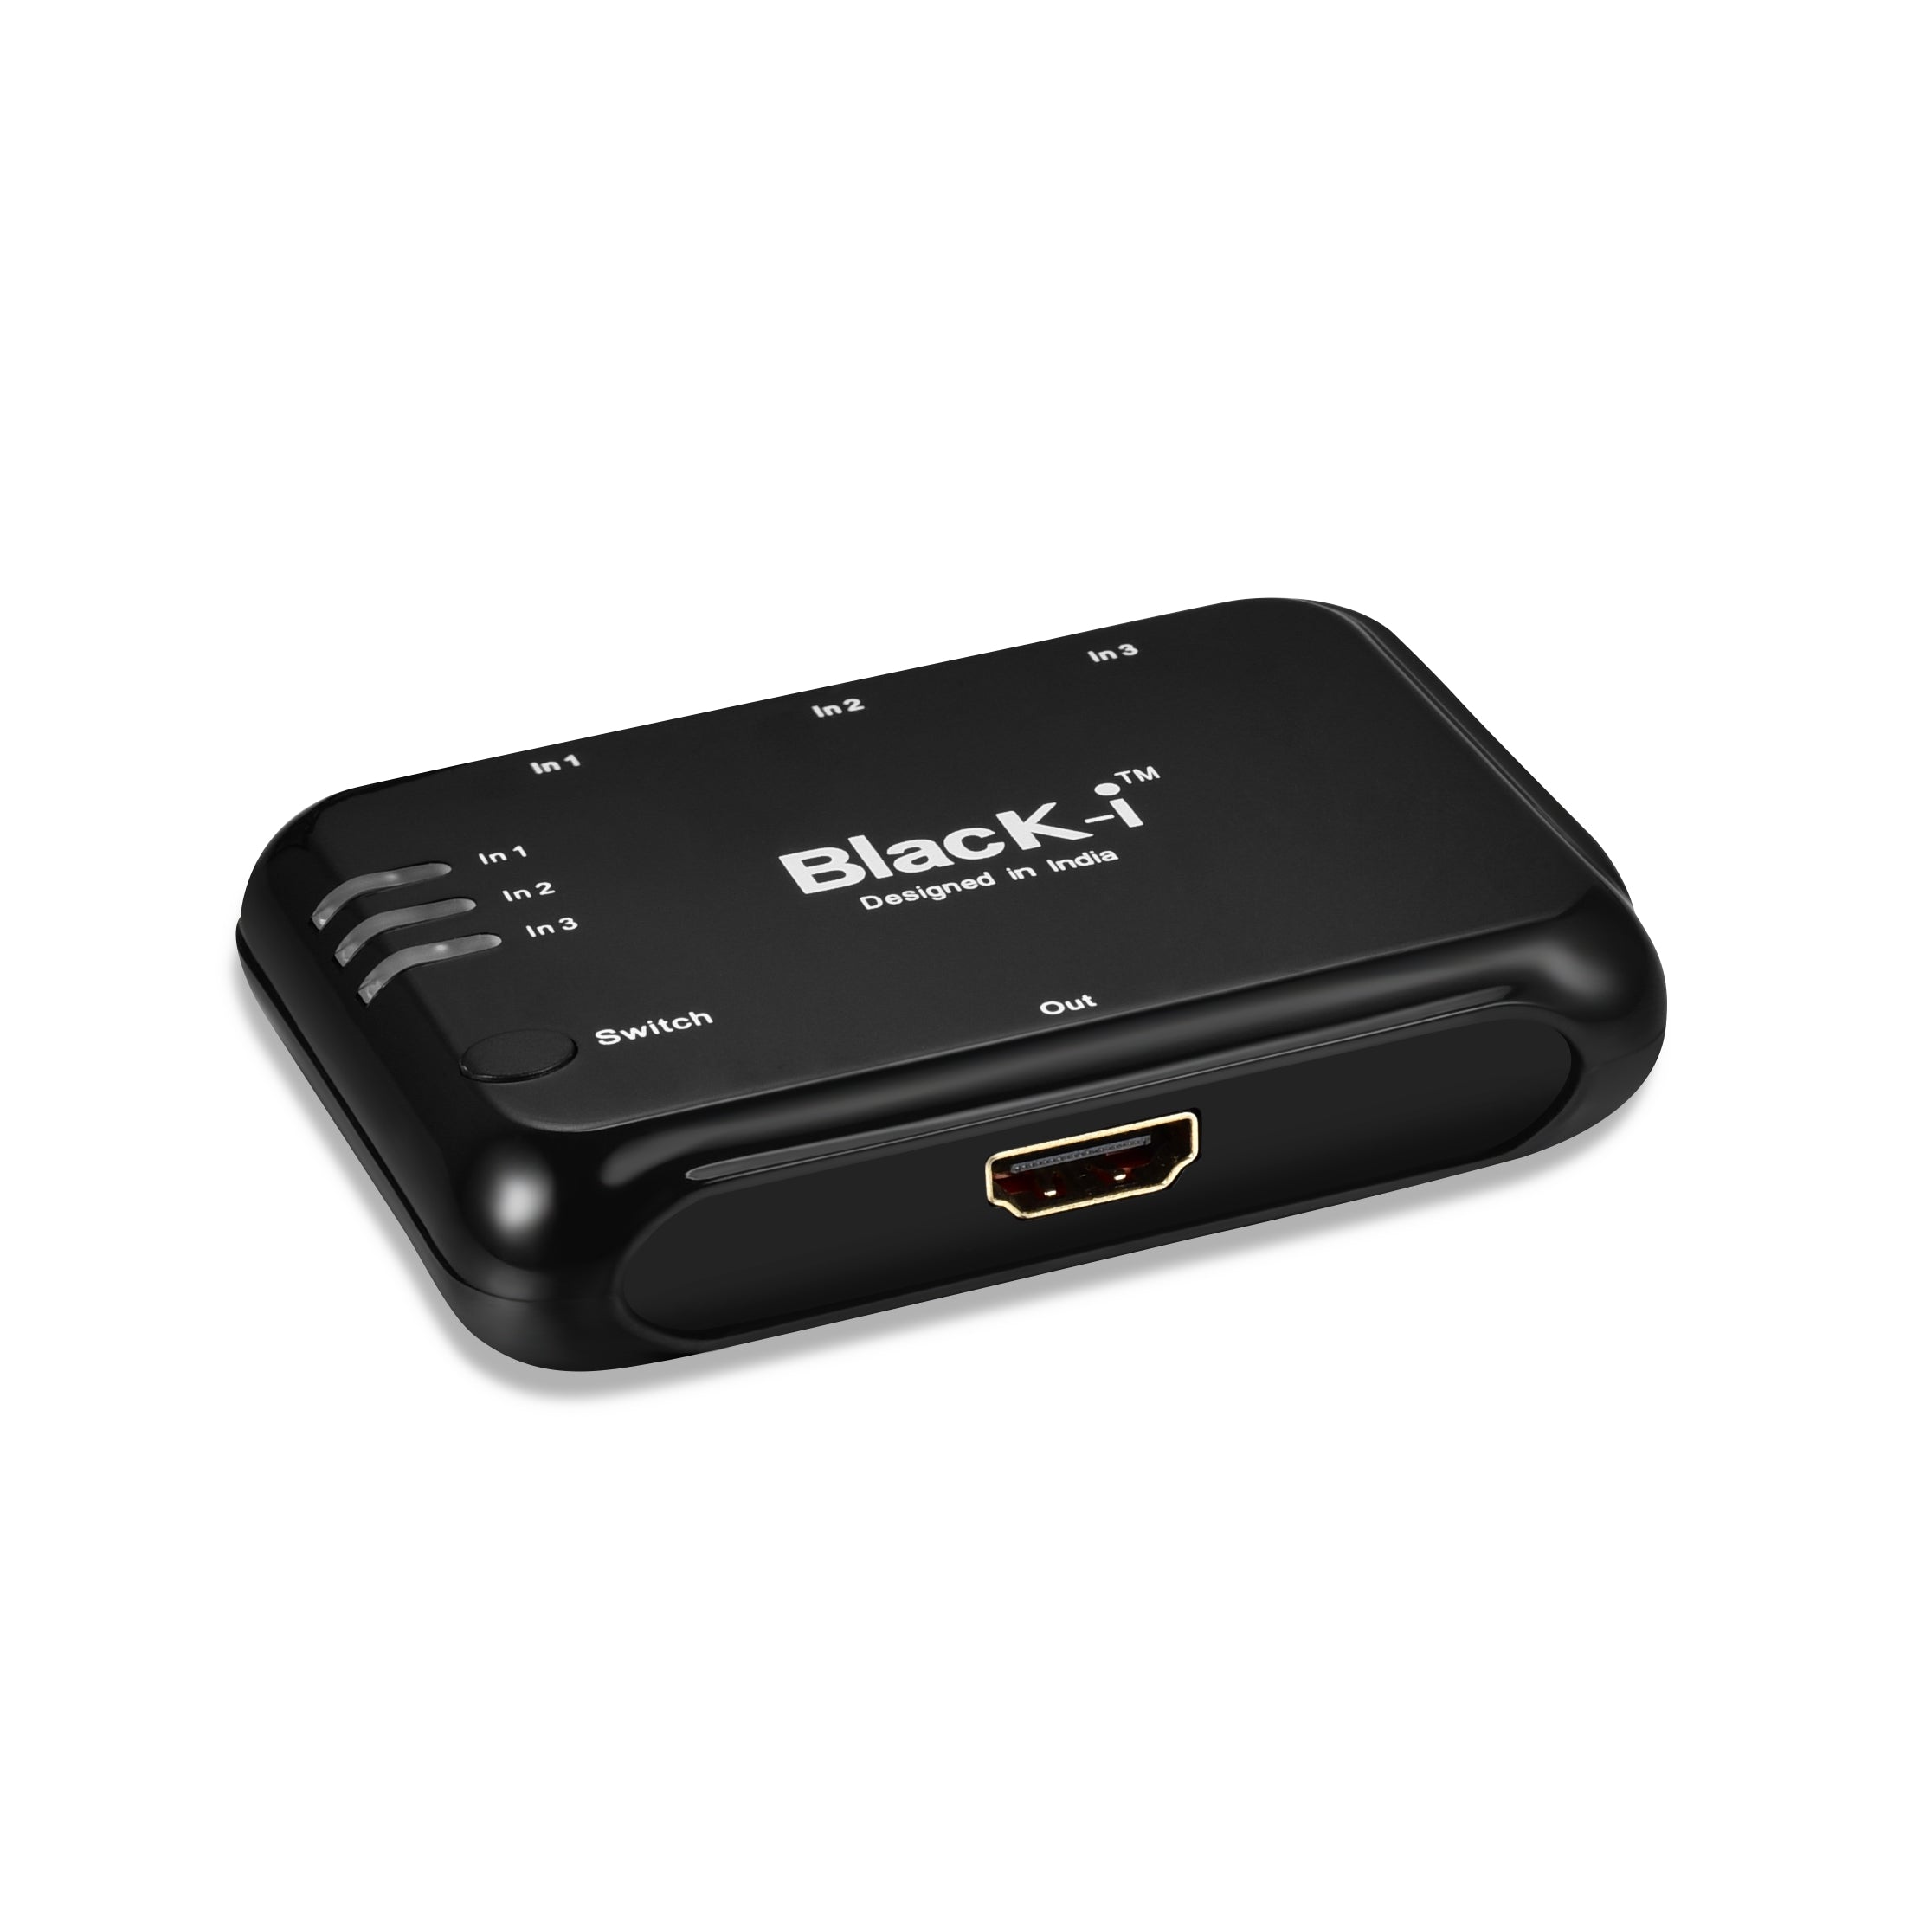 Black-i HDMI 4k Switcher - 3 Input 1 Output